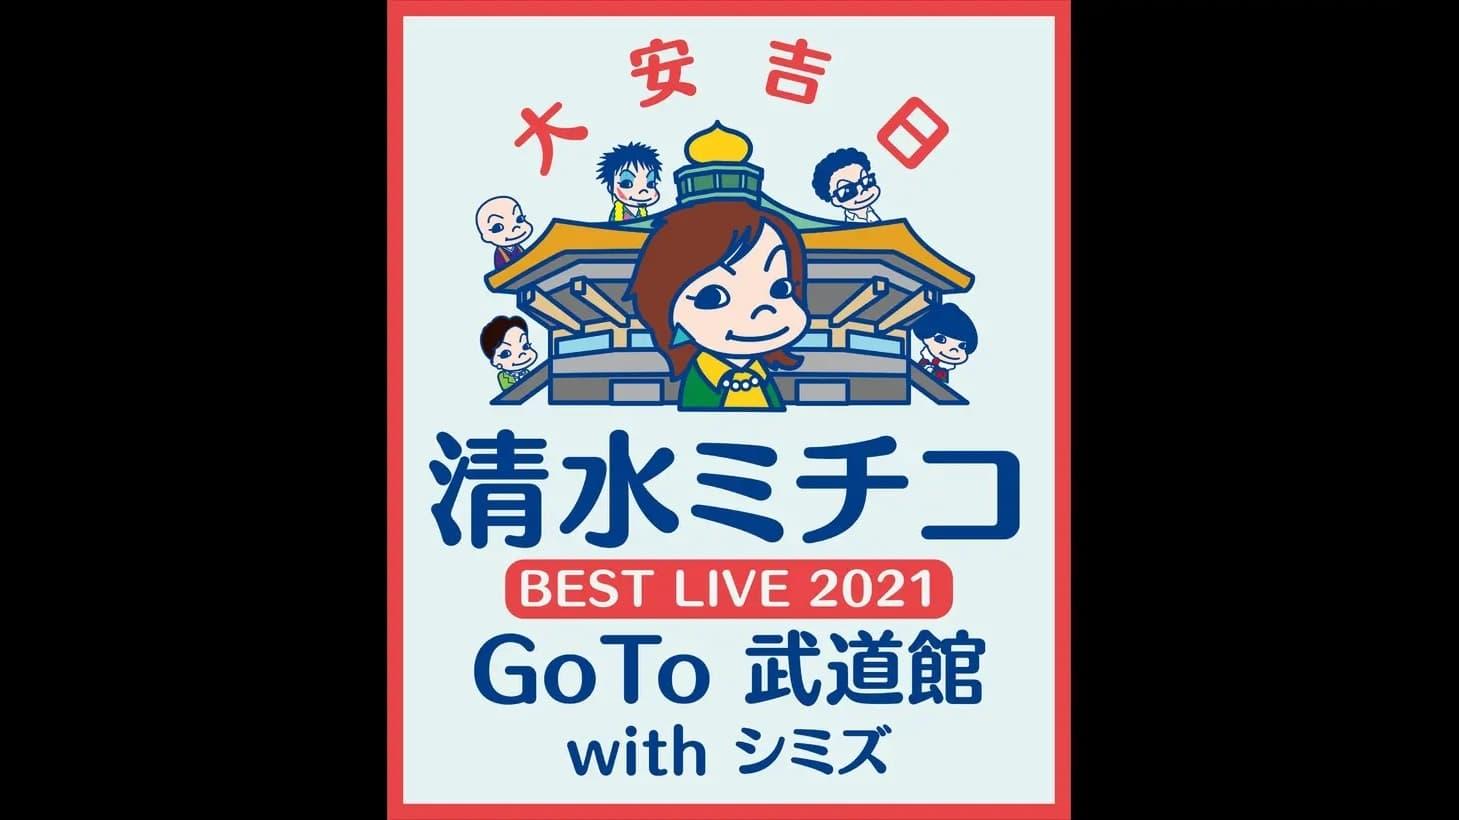 清水ミチコ BEST LIVE 2021〜GoTo 武道館 with シミズ〜 backdrop